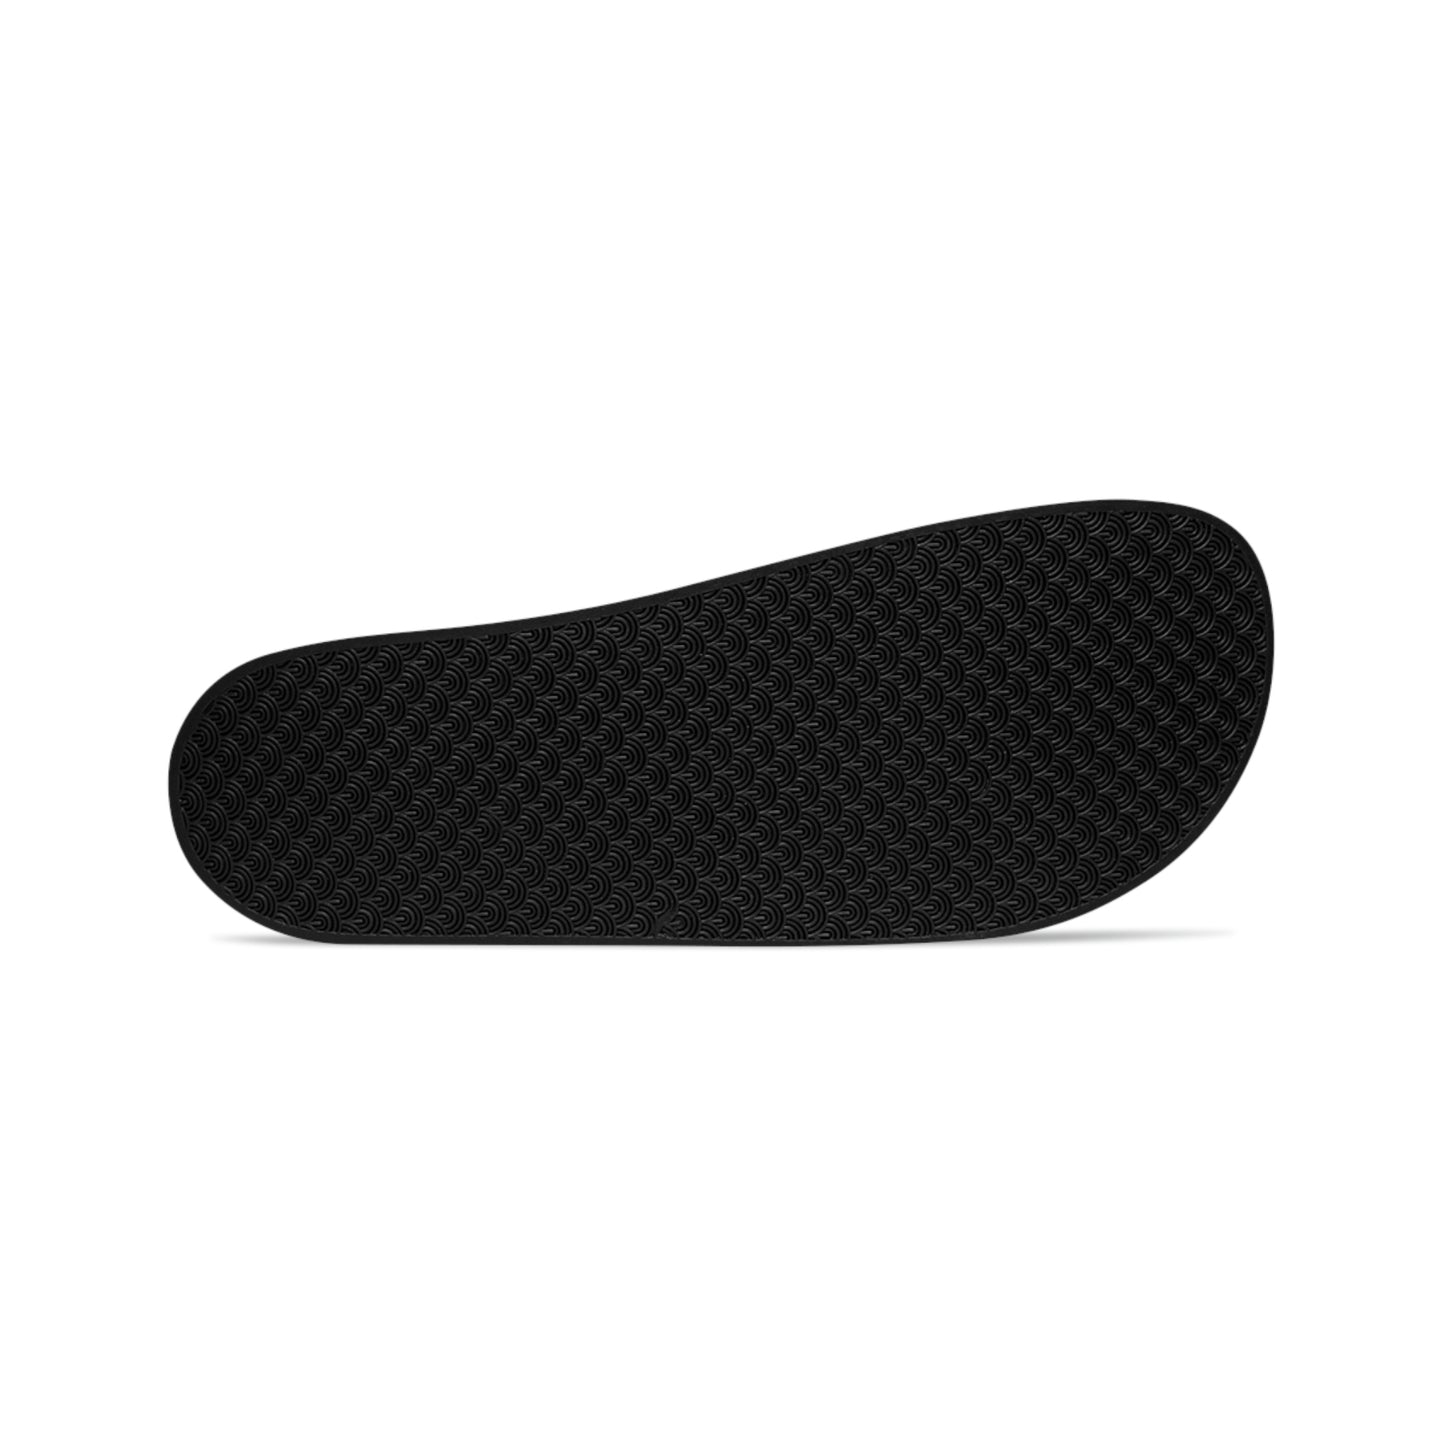 GRUMONH - Men's Slide Sandals White